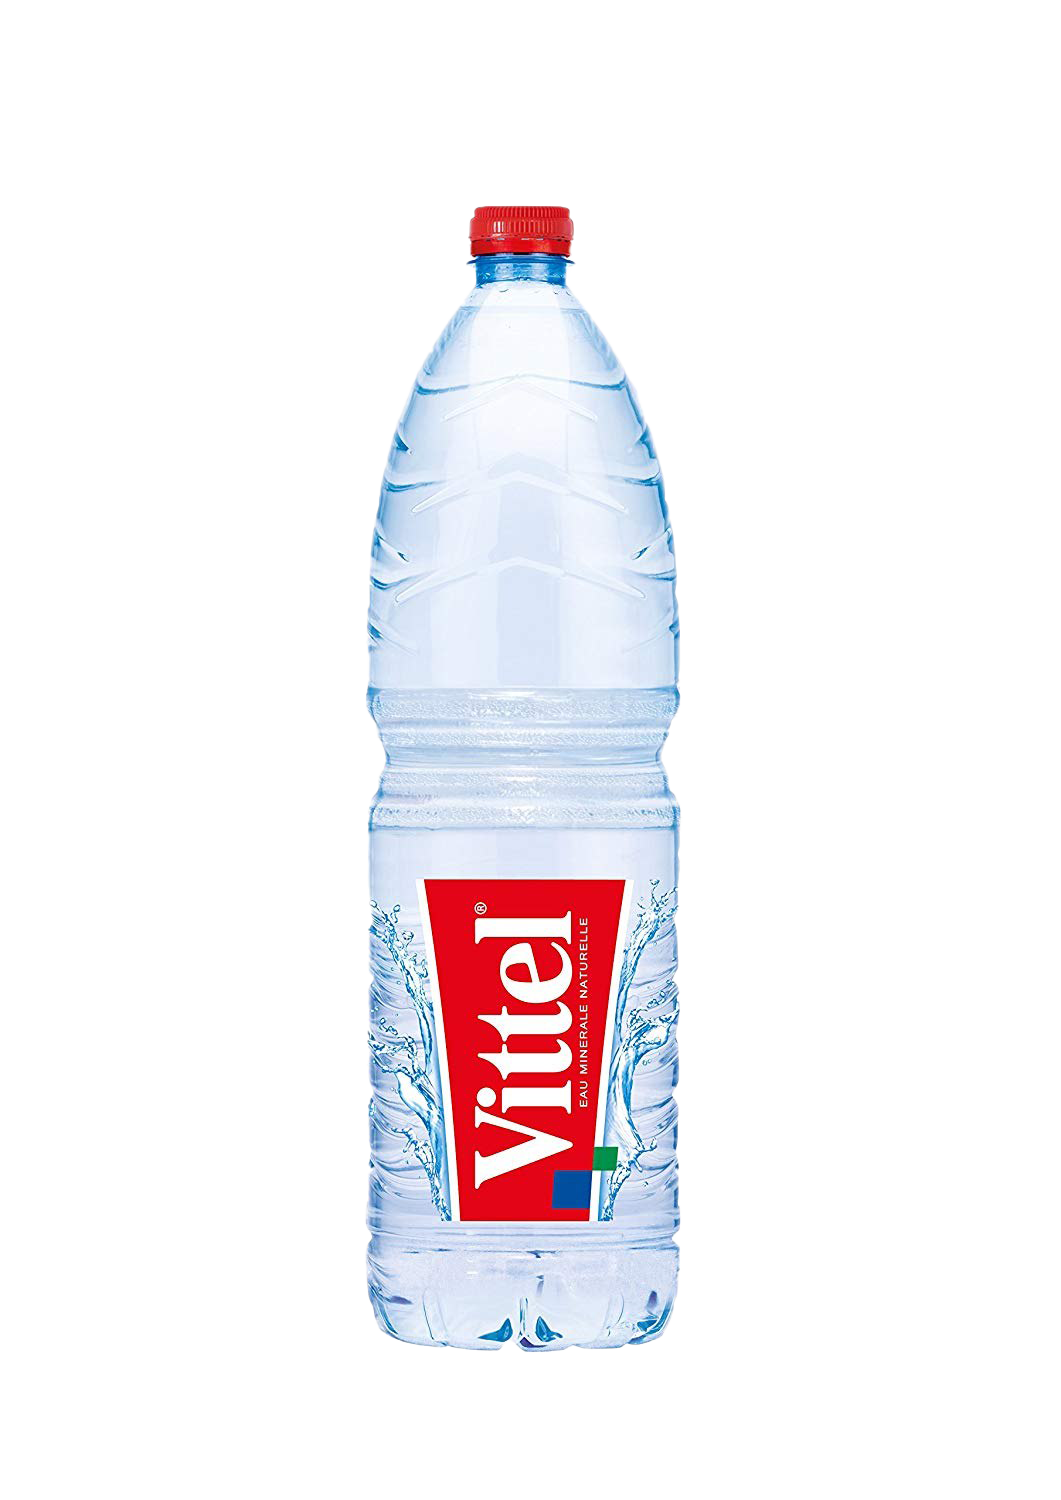 Download PNG image - Vittel Bottled Water Transparent Background 